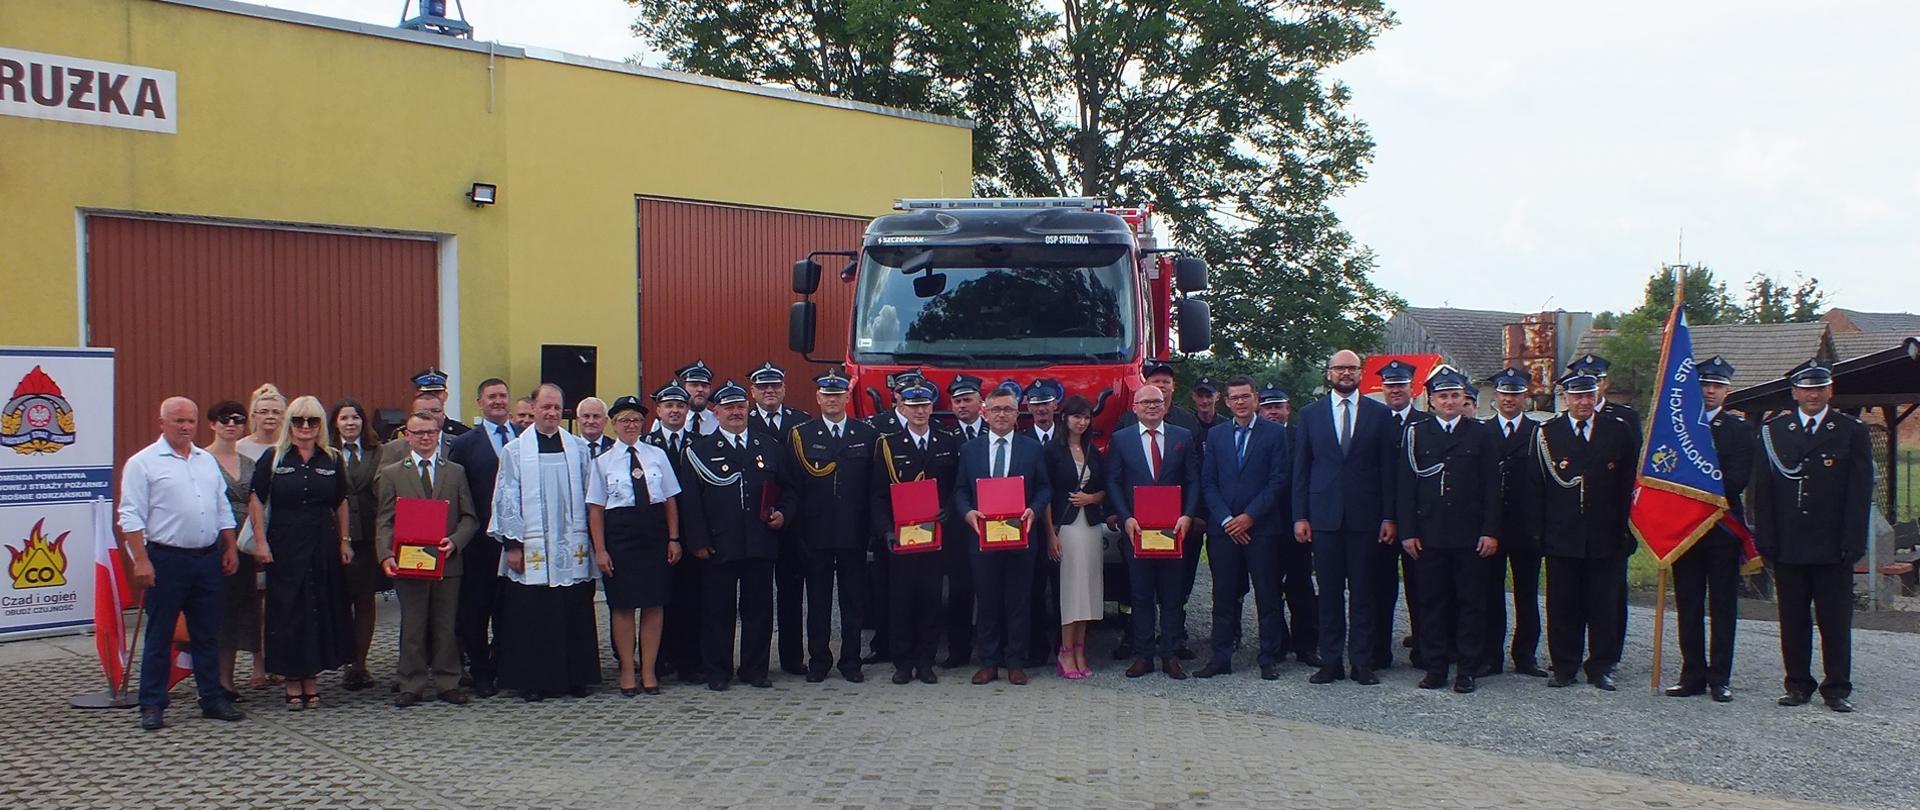 Zdjęcie przedstawia wszystkie zgromadzone osoby podczas przekazania nowego samochodu ratowniczo-gaśniczego. Zdjęcie wykonane zostało na tle remizy strażackiej oraz nowego samochodu.